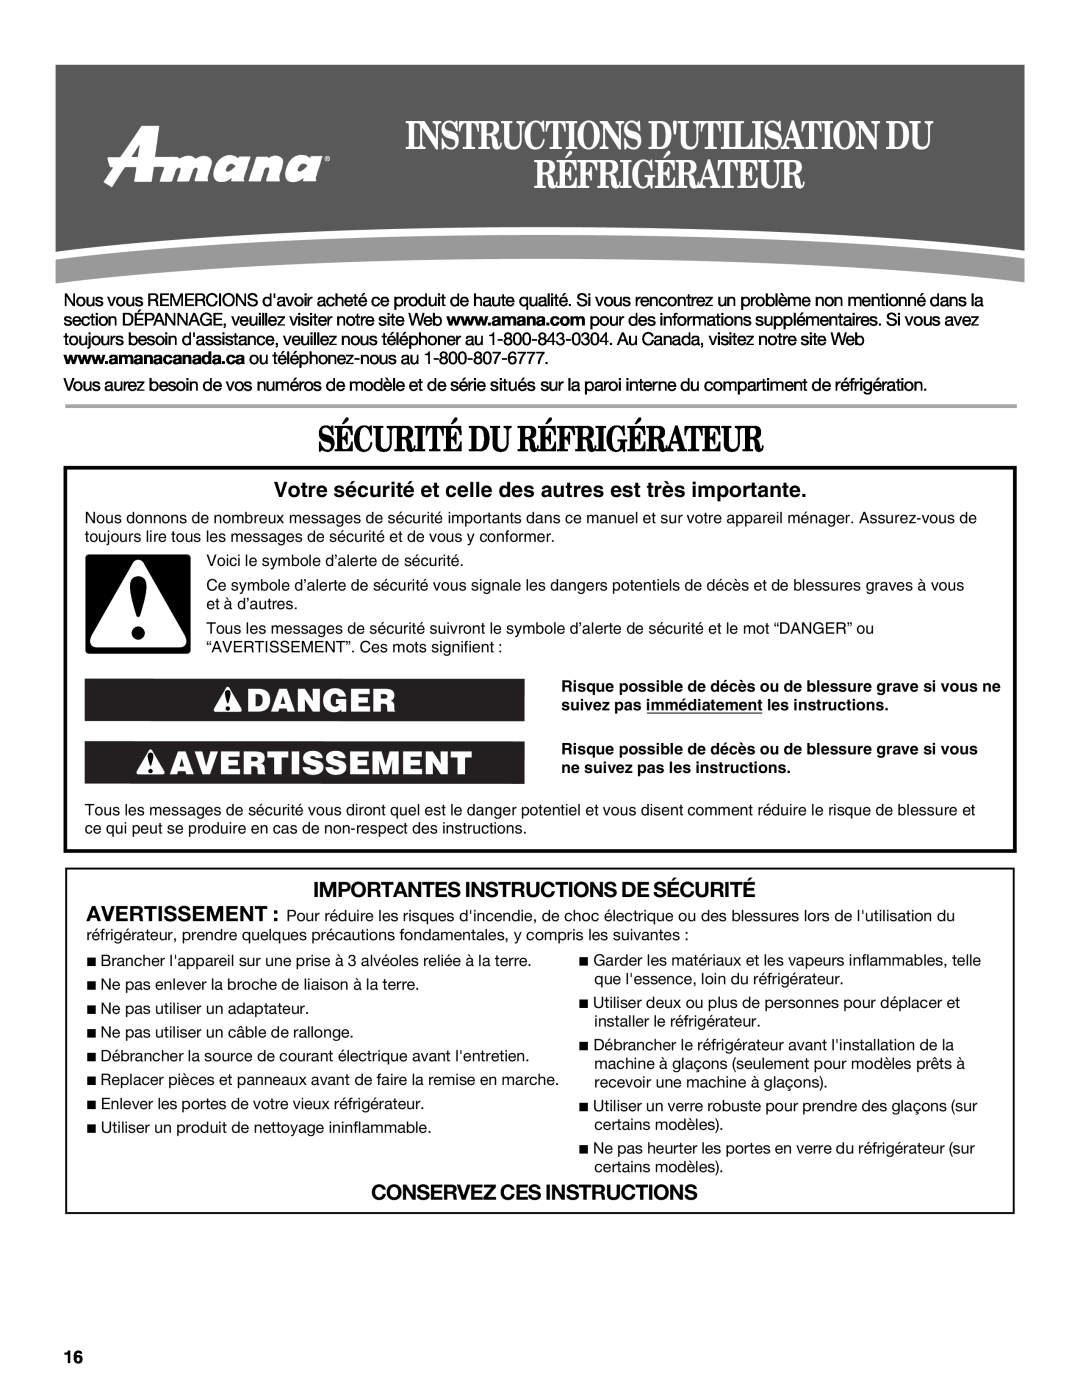 Amana W10316638A Sécurité Du Réfrigérateur, Danger Avertissement, Importantes Instructions De Sécurité 